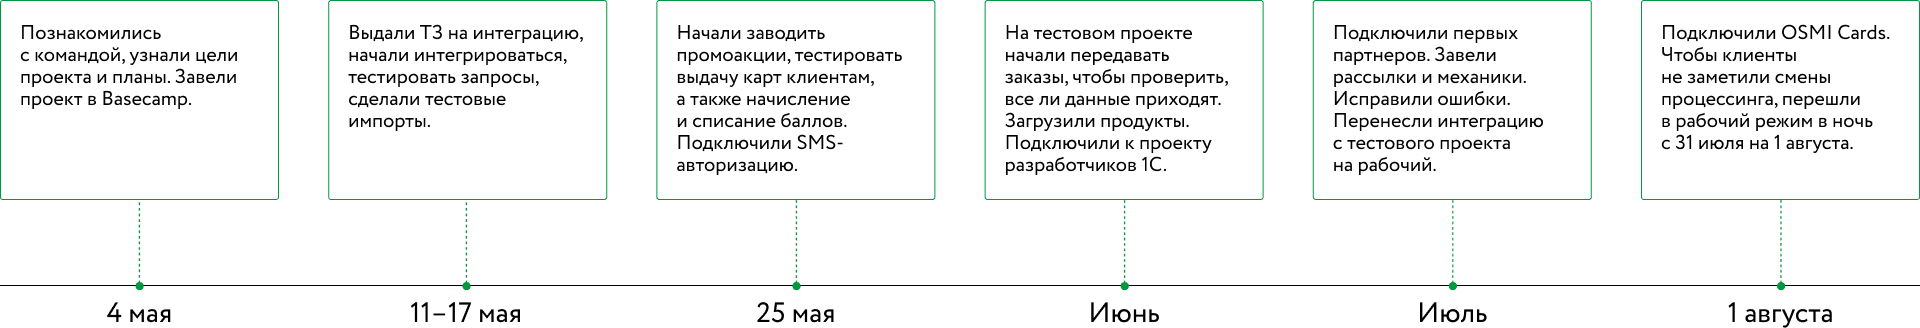 Интеграция «Ельцин Центра» с Mindbox проходила в шесть этапов